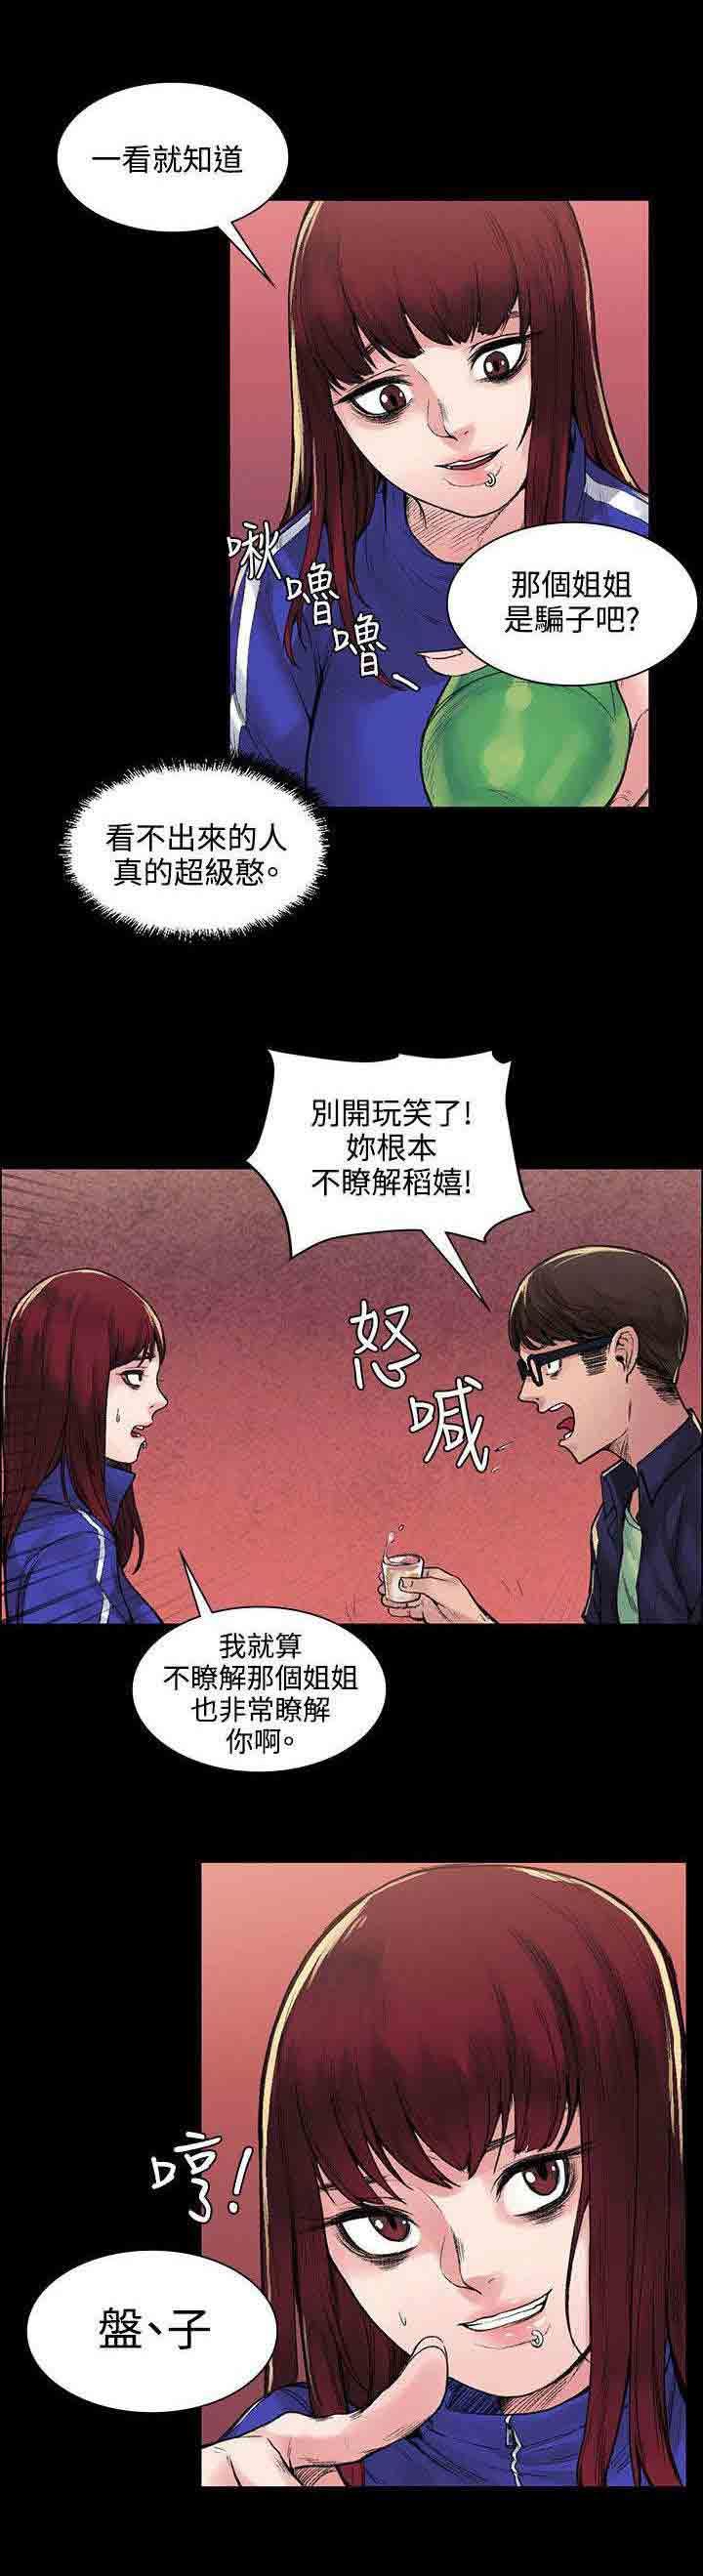 韩国污漫画 甜蜜的香氣 第12话诅咒 5